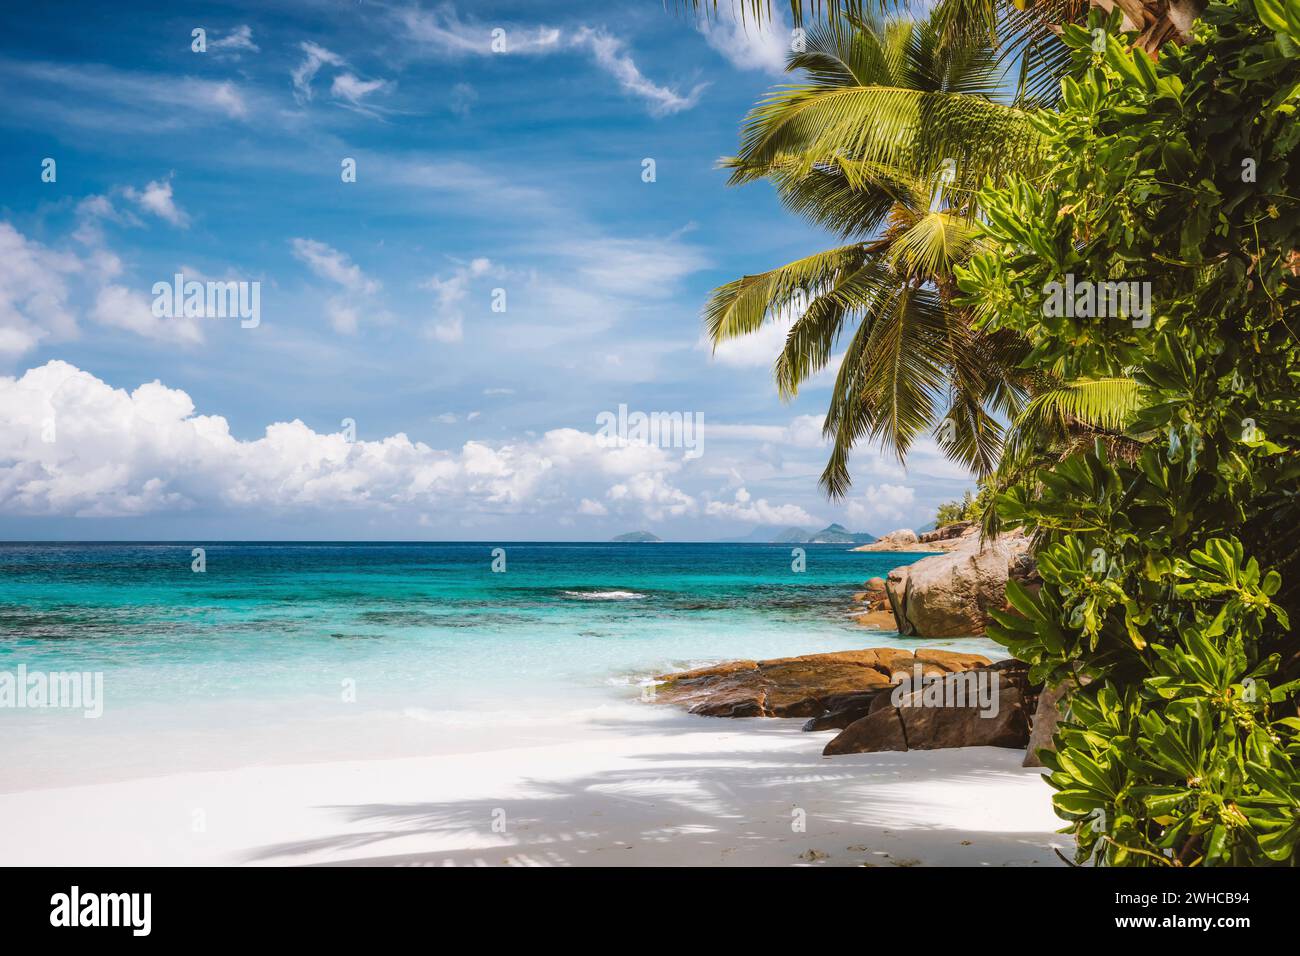 Une plage de sable tropical exotique vide sur l'île de Mahé, îles Seychelles. Destination de vacances célèbre en saison estivale. Banque D'Images